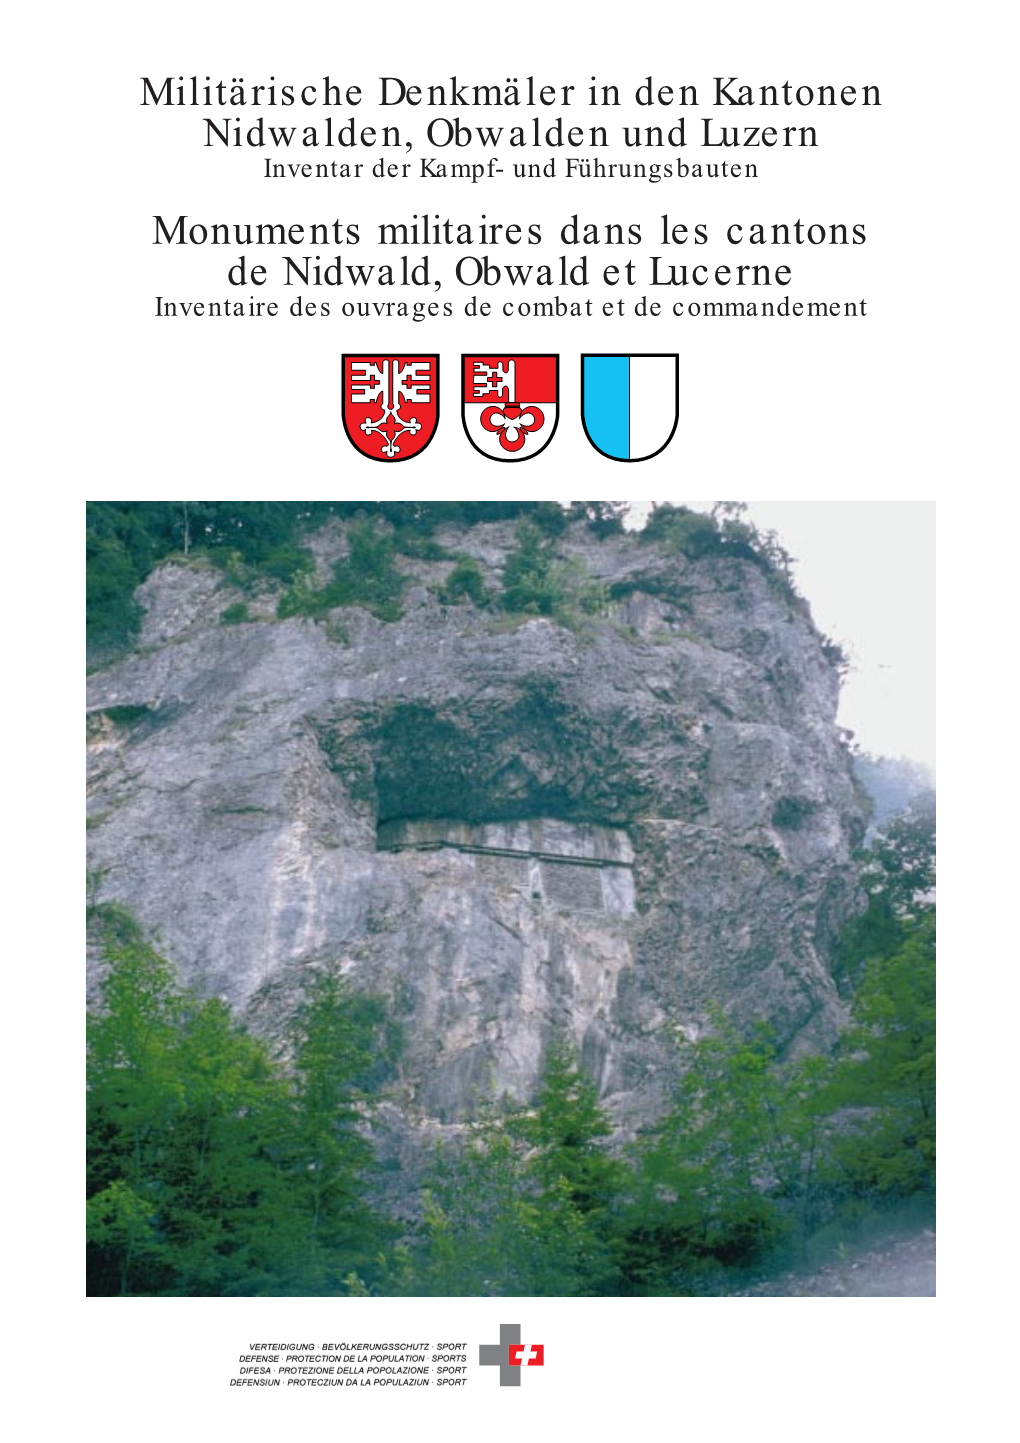 Monuments Militaires Dans Les Cantons De Nidwald, Obwald Et Lucerne